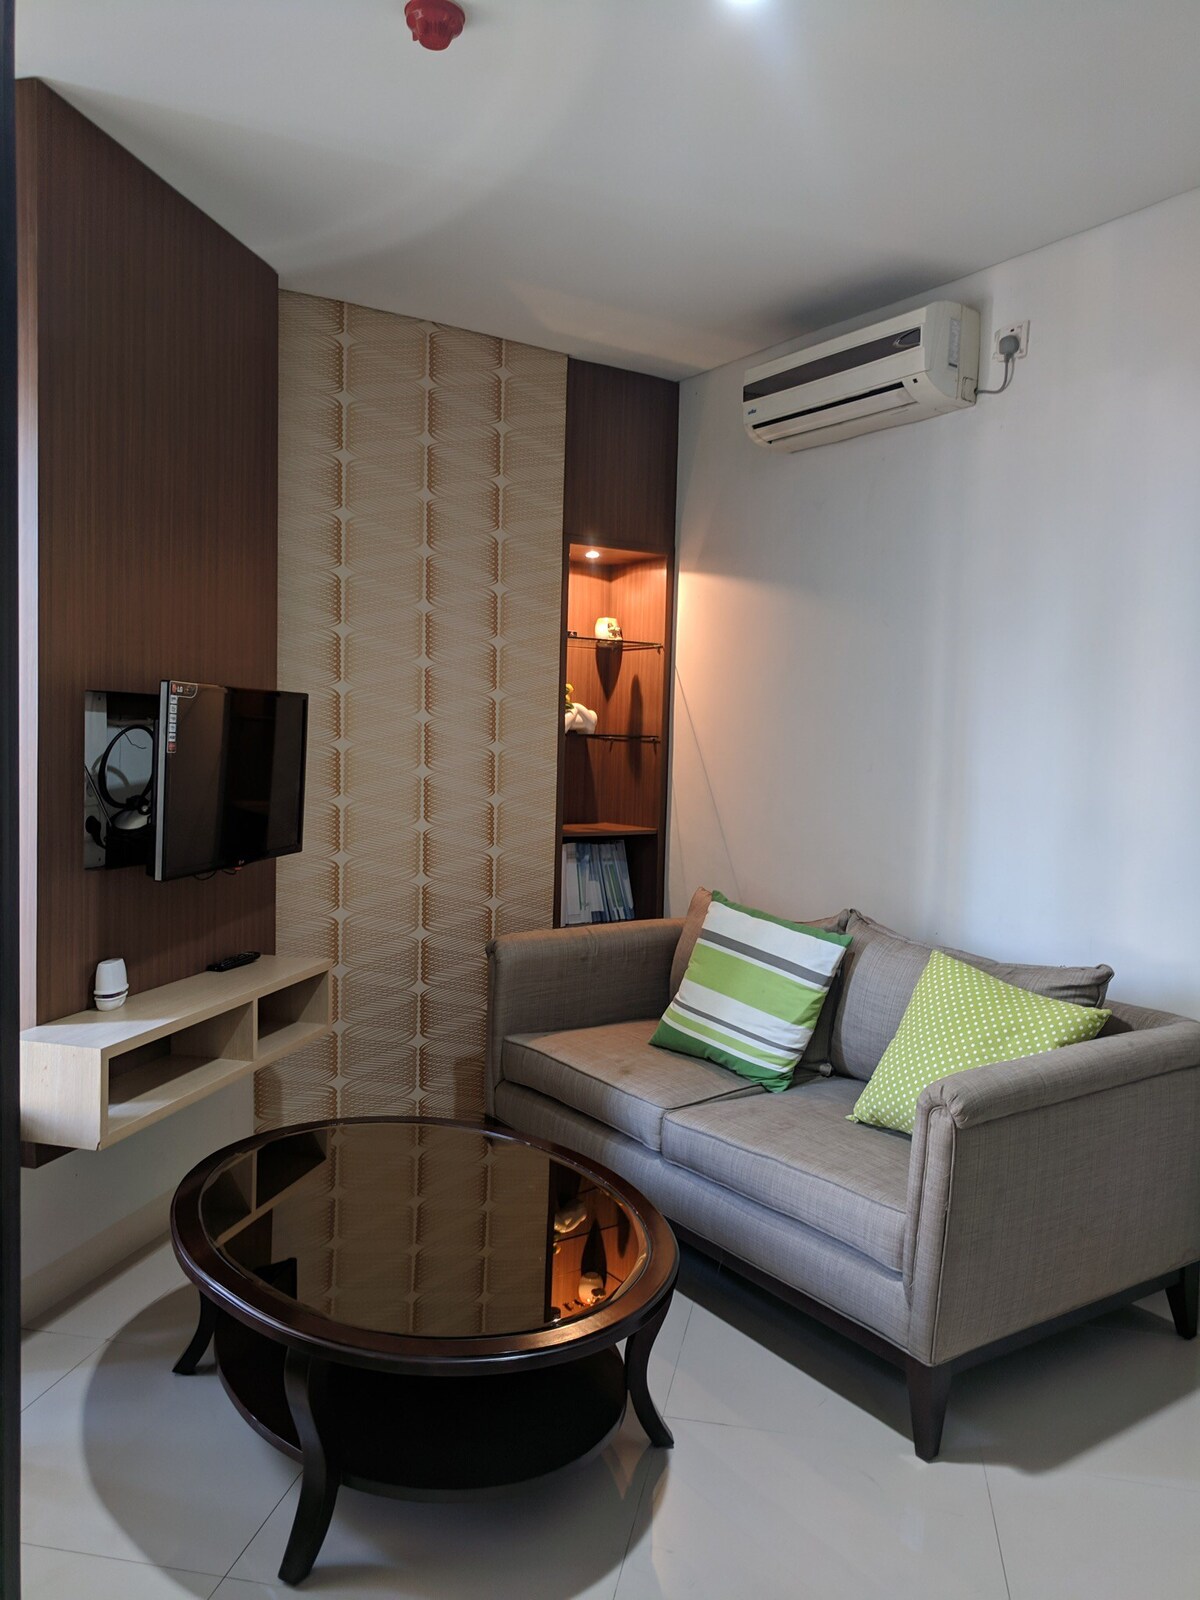 2 Bedrooms Apartment Semanggi for Rent